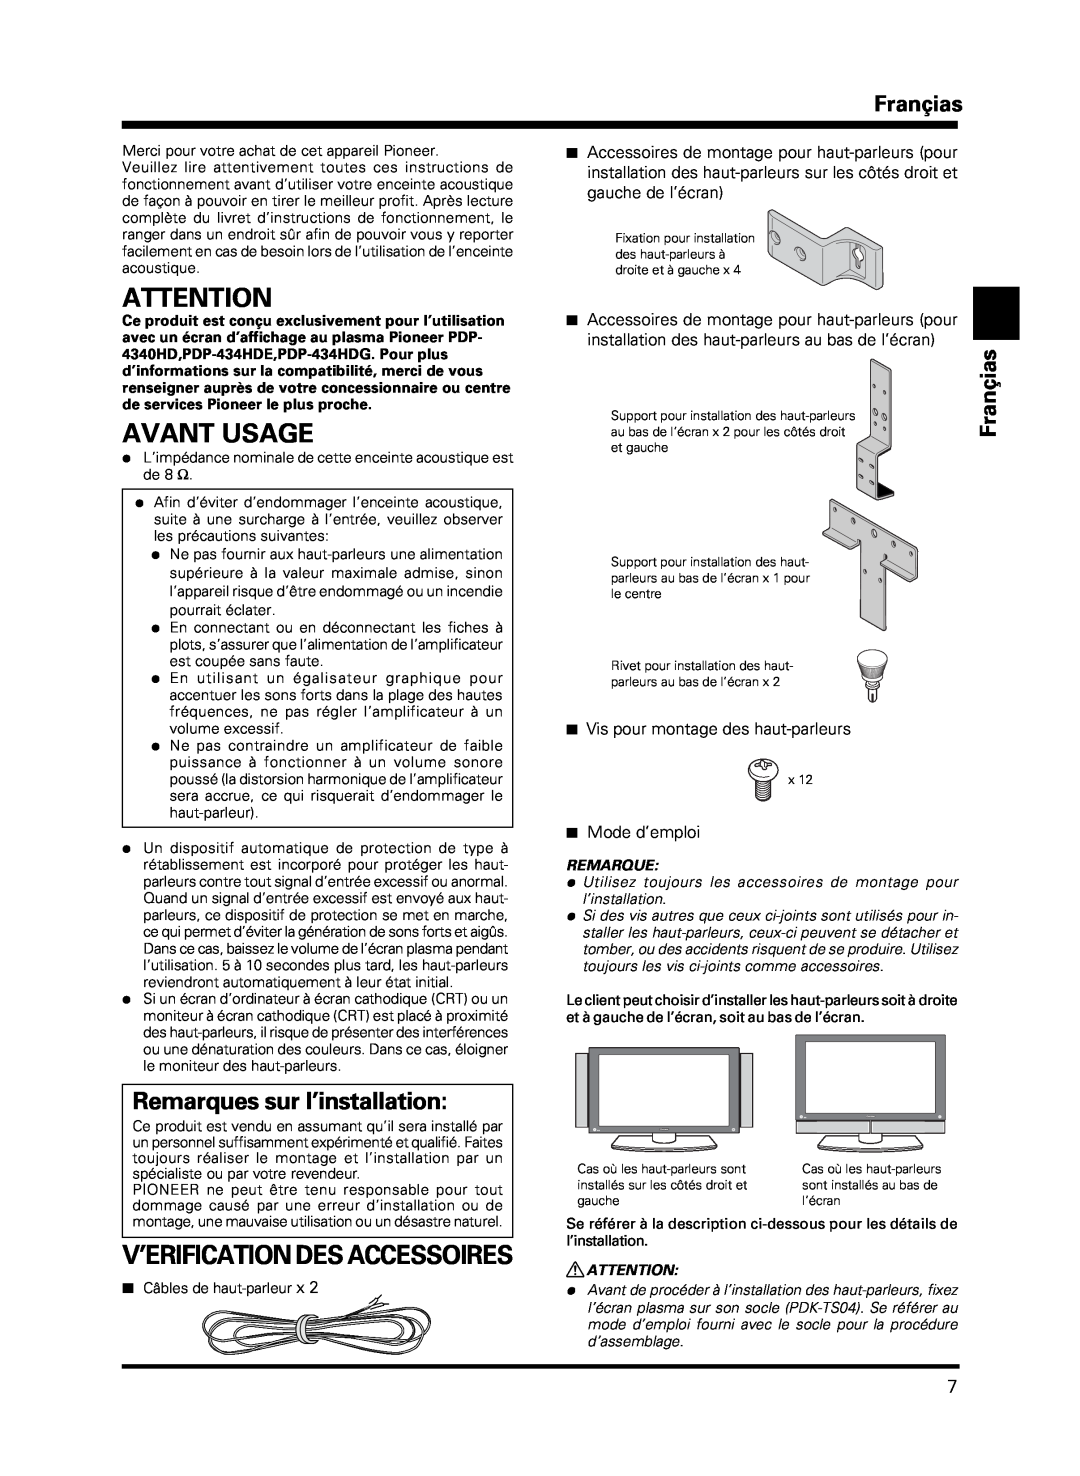 Pioneer PDP-S13-LR manual Avant Usage, V’Erification Des Accessoires, Remarques sur l’installation, Françias, Mode d’emploi 